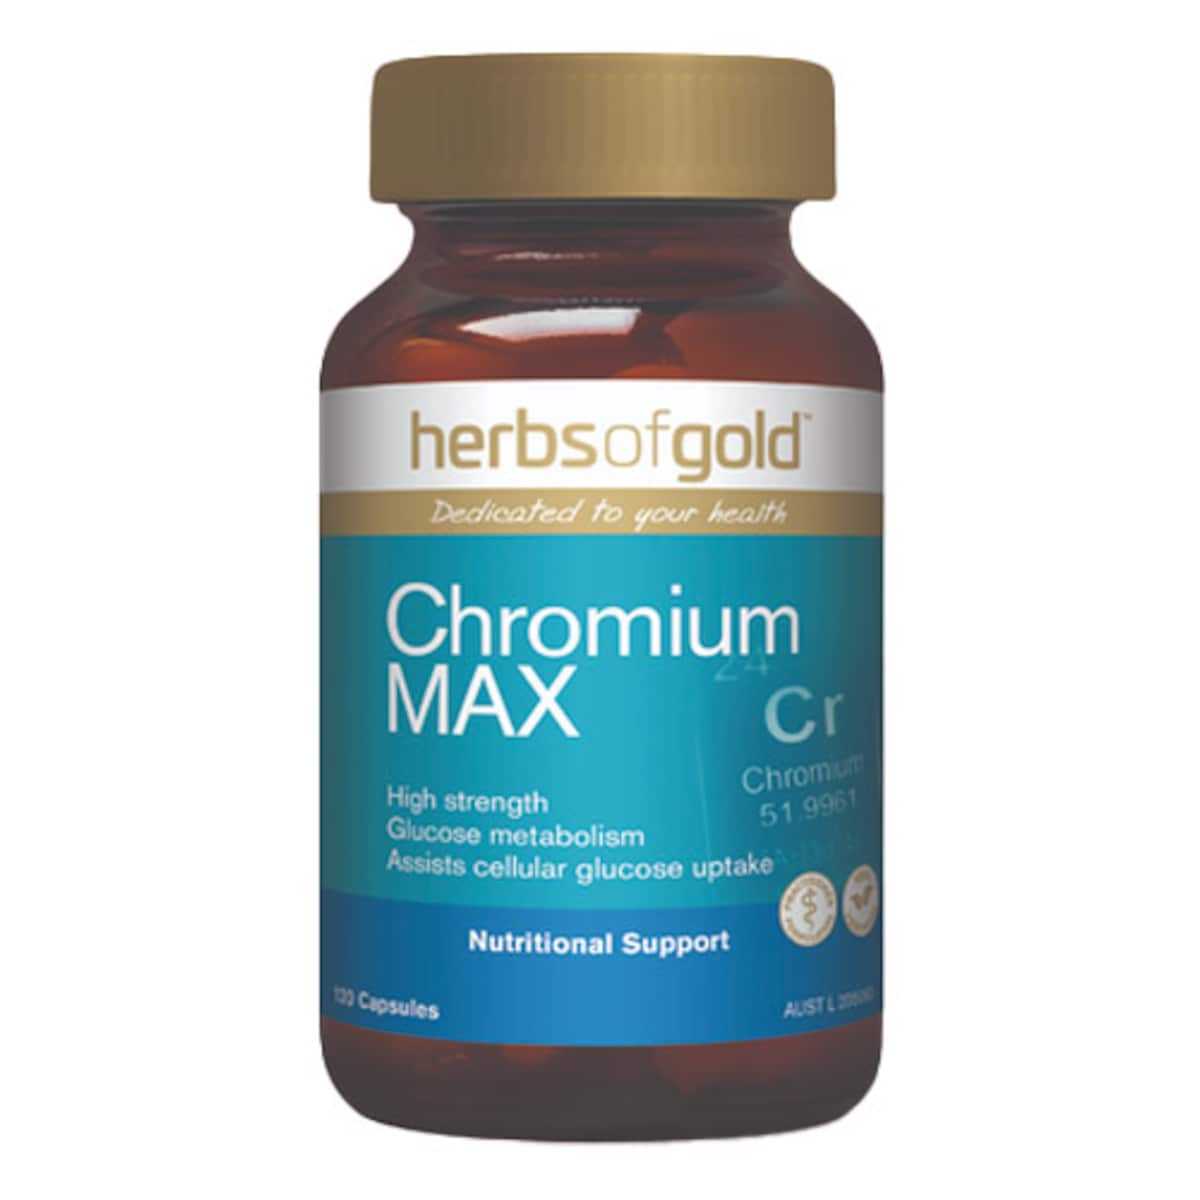 Herbs of Gold Chromium MAX 120 Capsules Australia